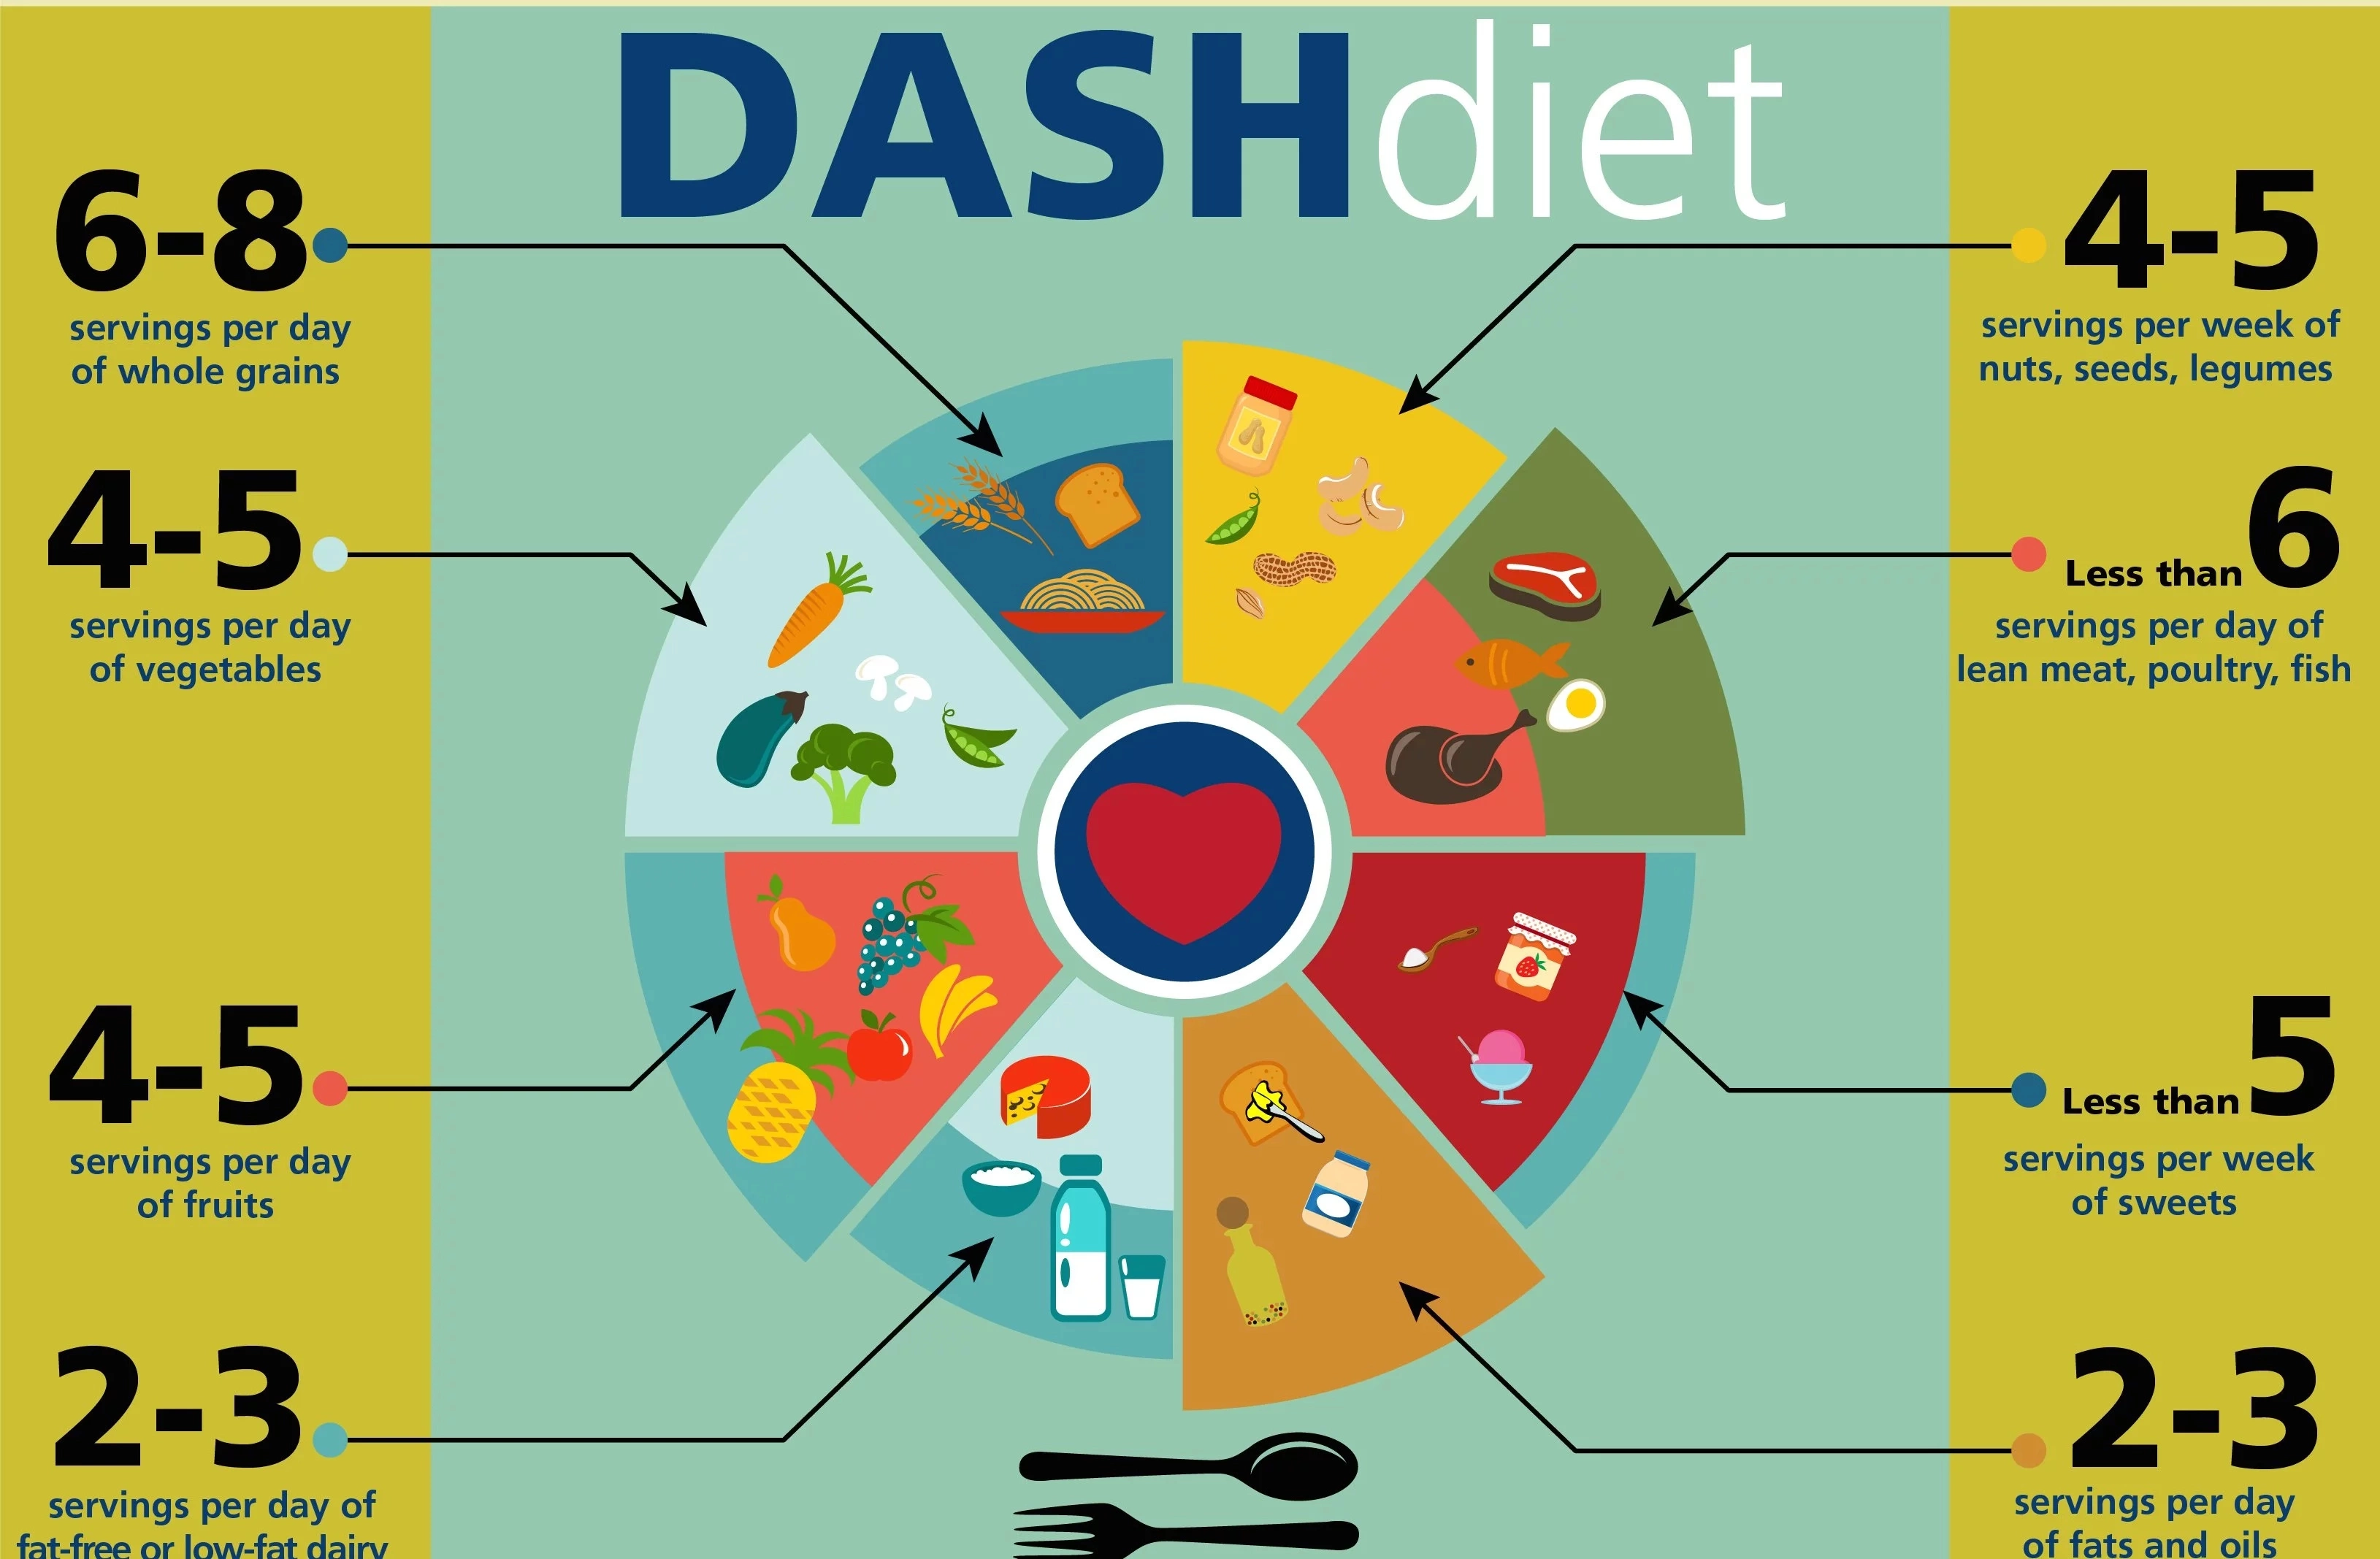 DASH diet - An effective way to manage hypertension